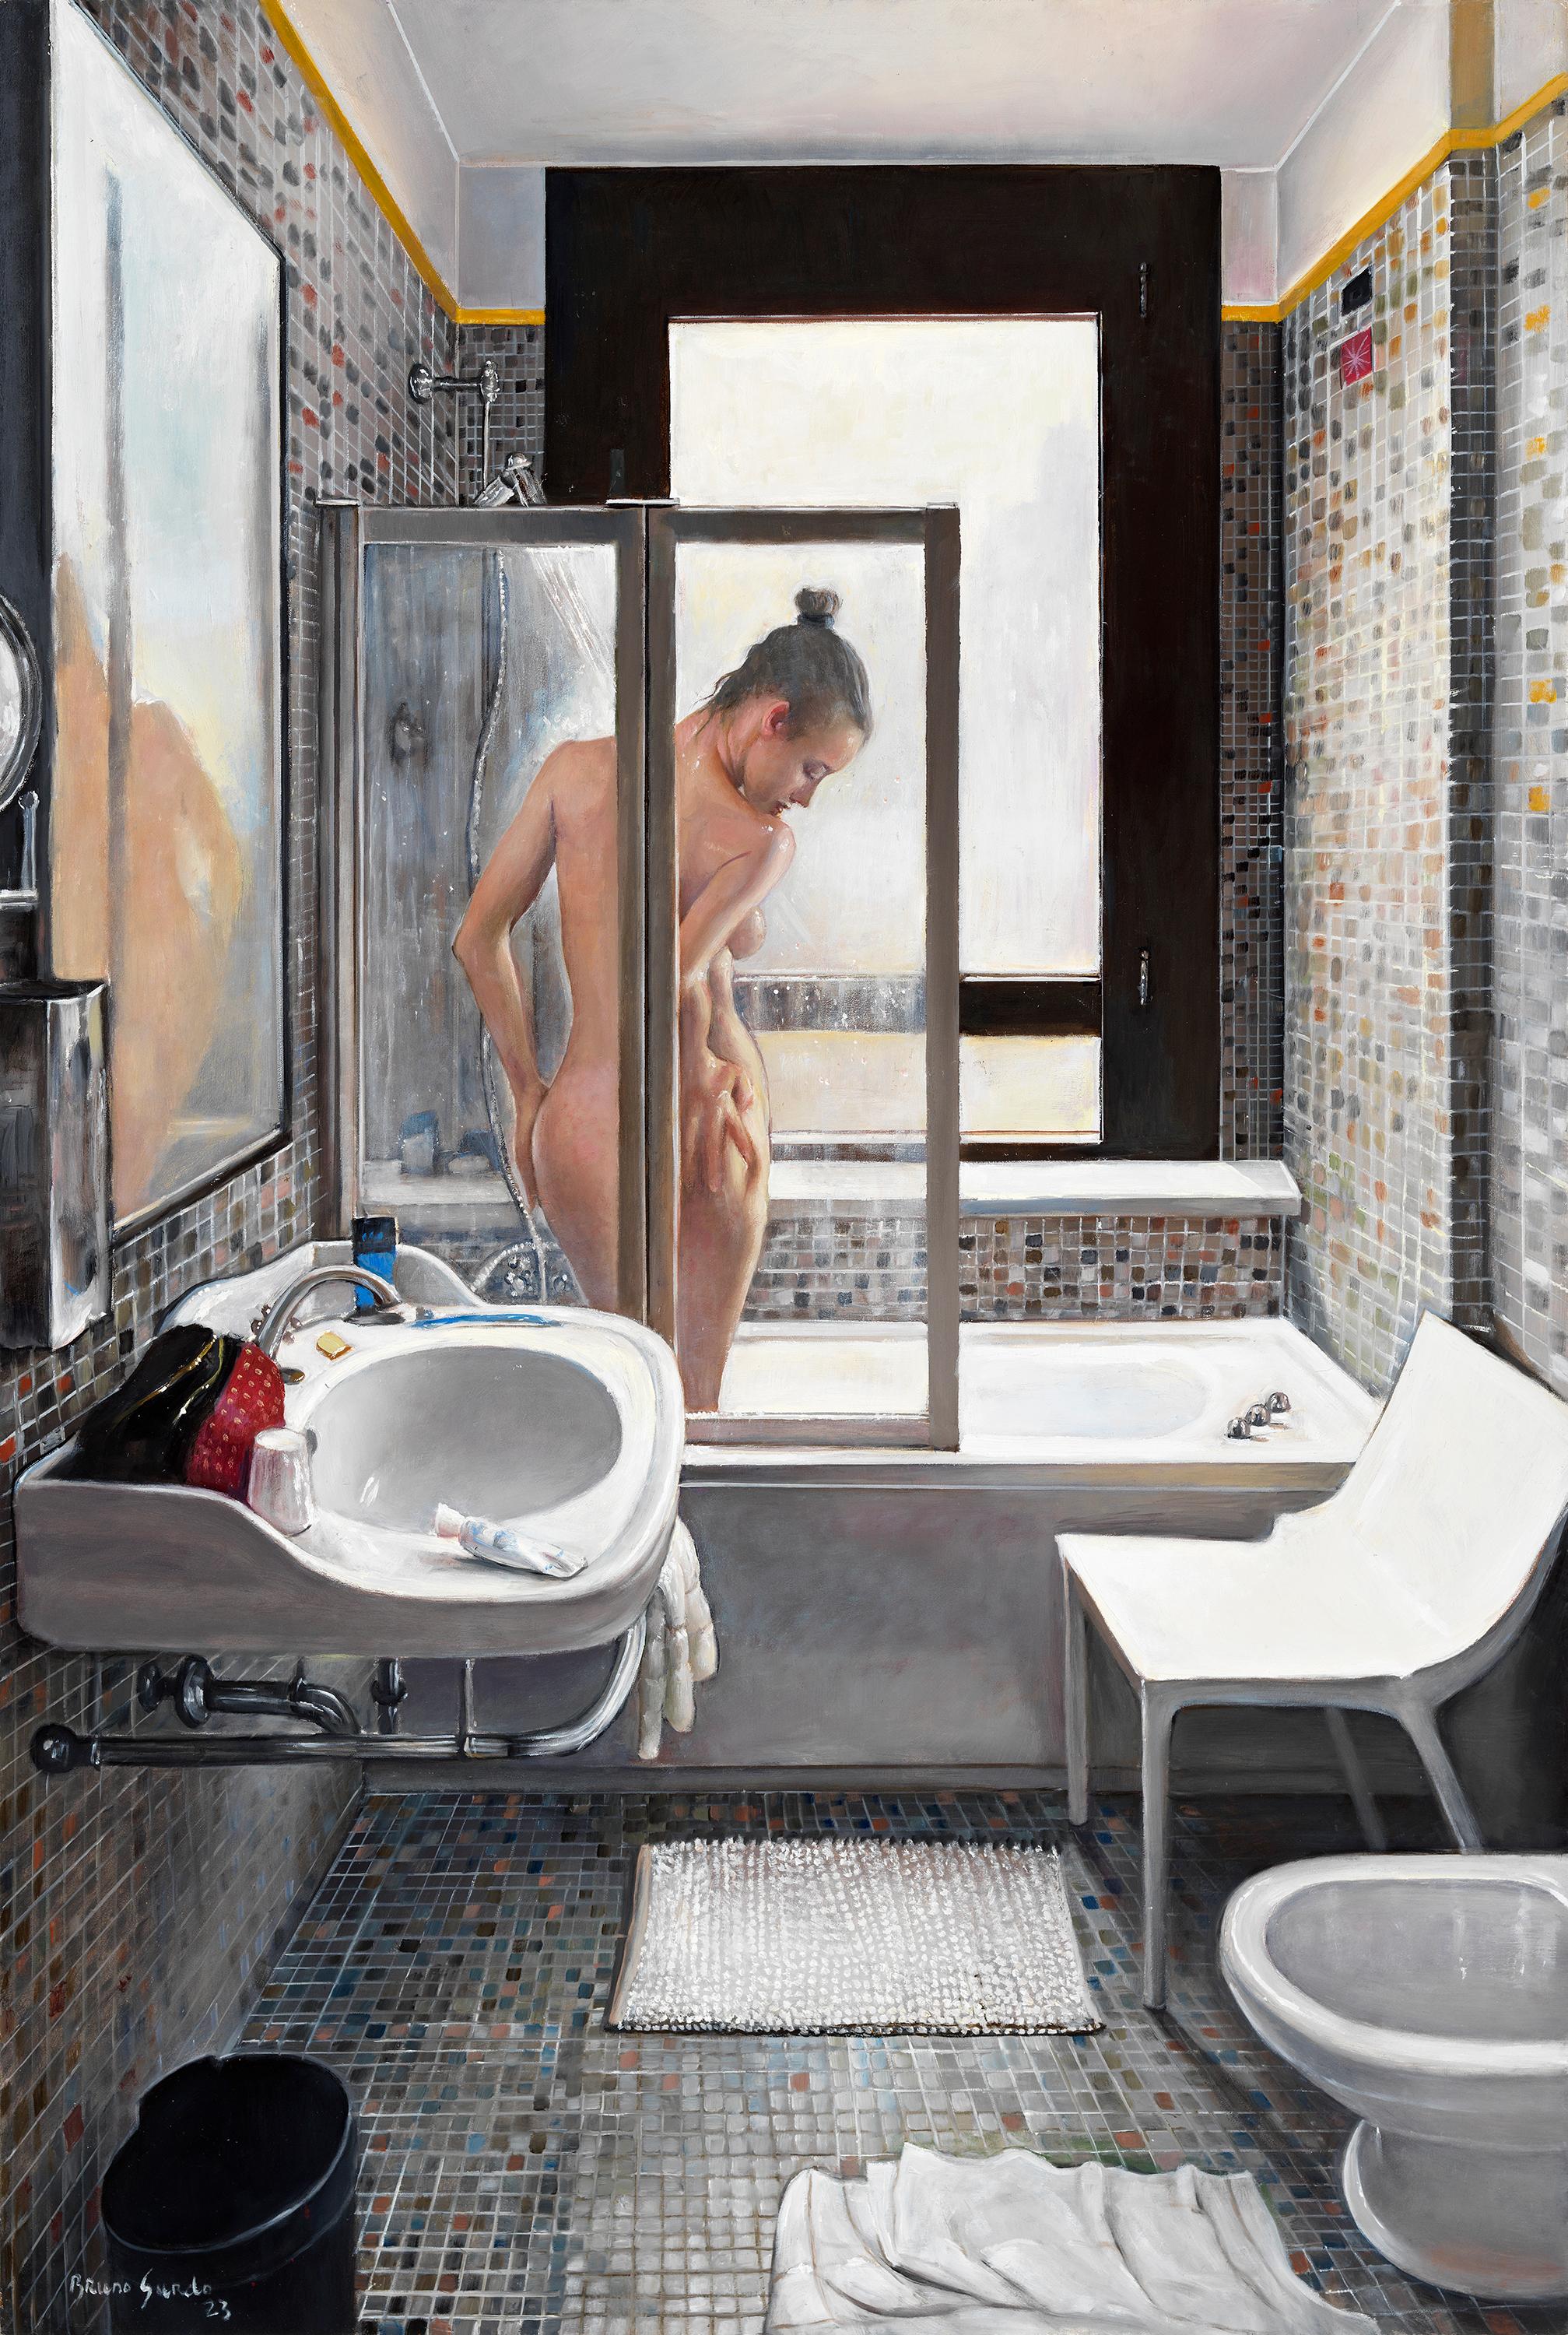 Bruno Surdo Nude Painting - Venetian Shower -  Nude Woman Showering in Tiled Bath, Original Oil Painting